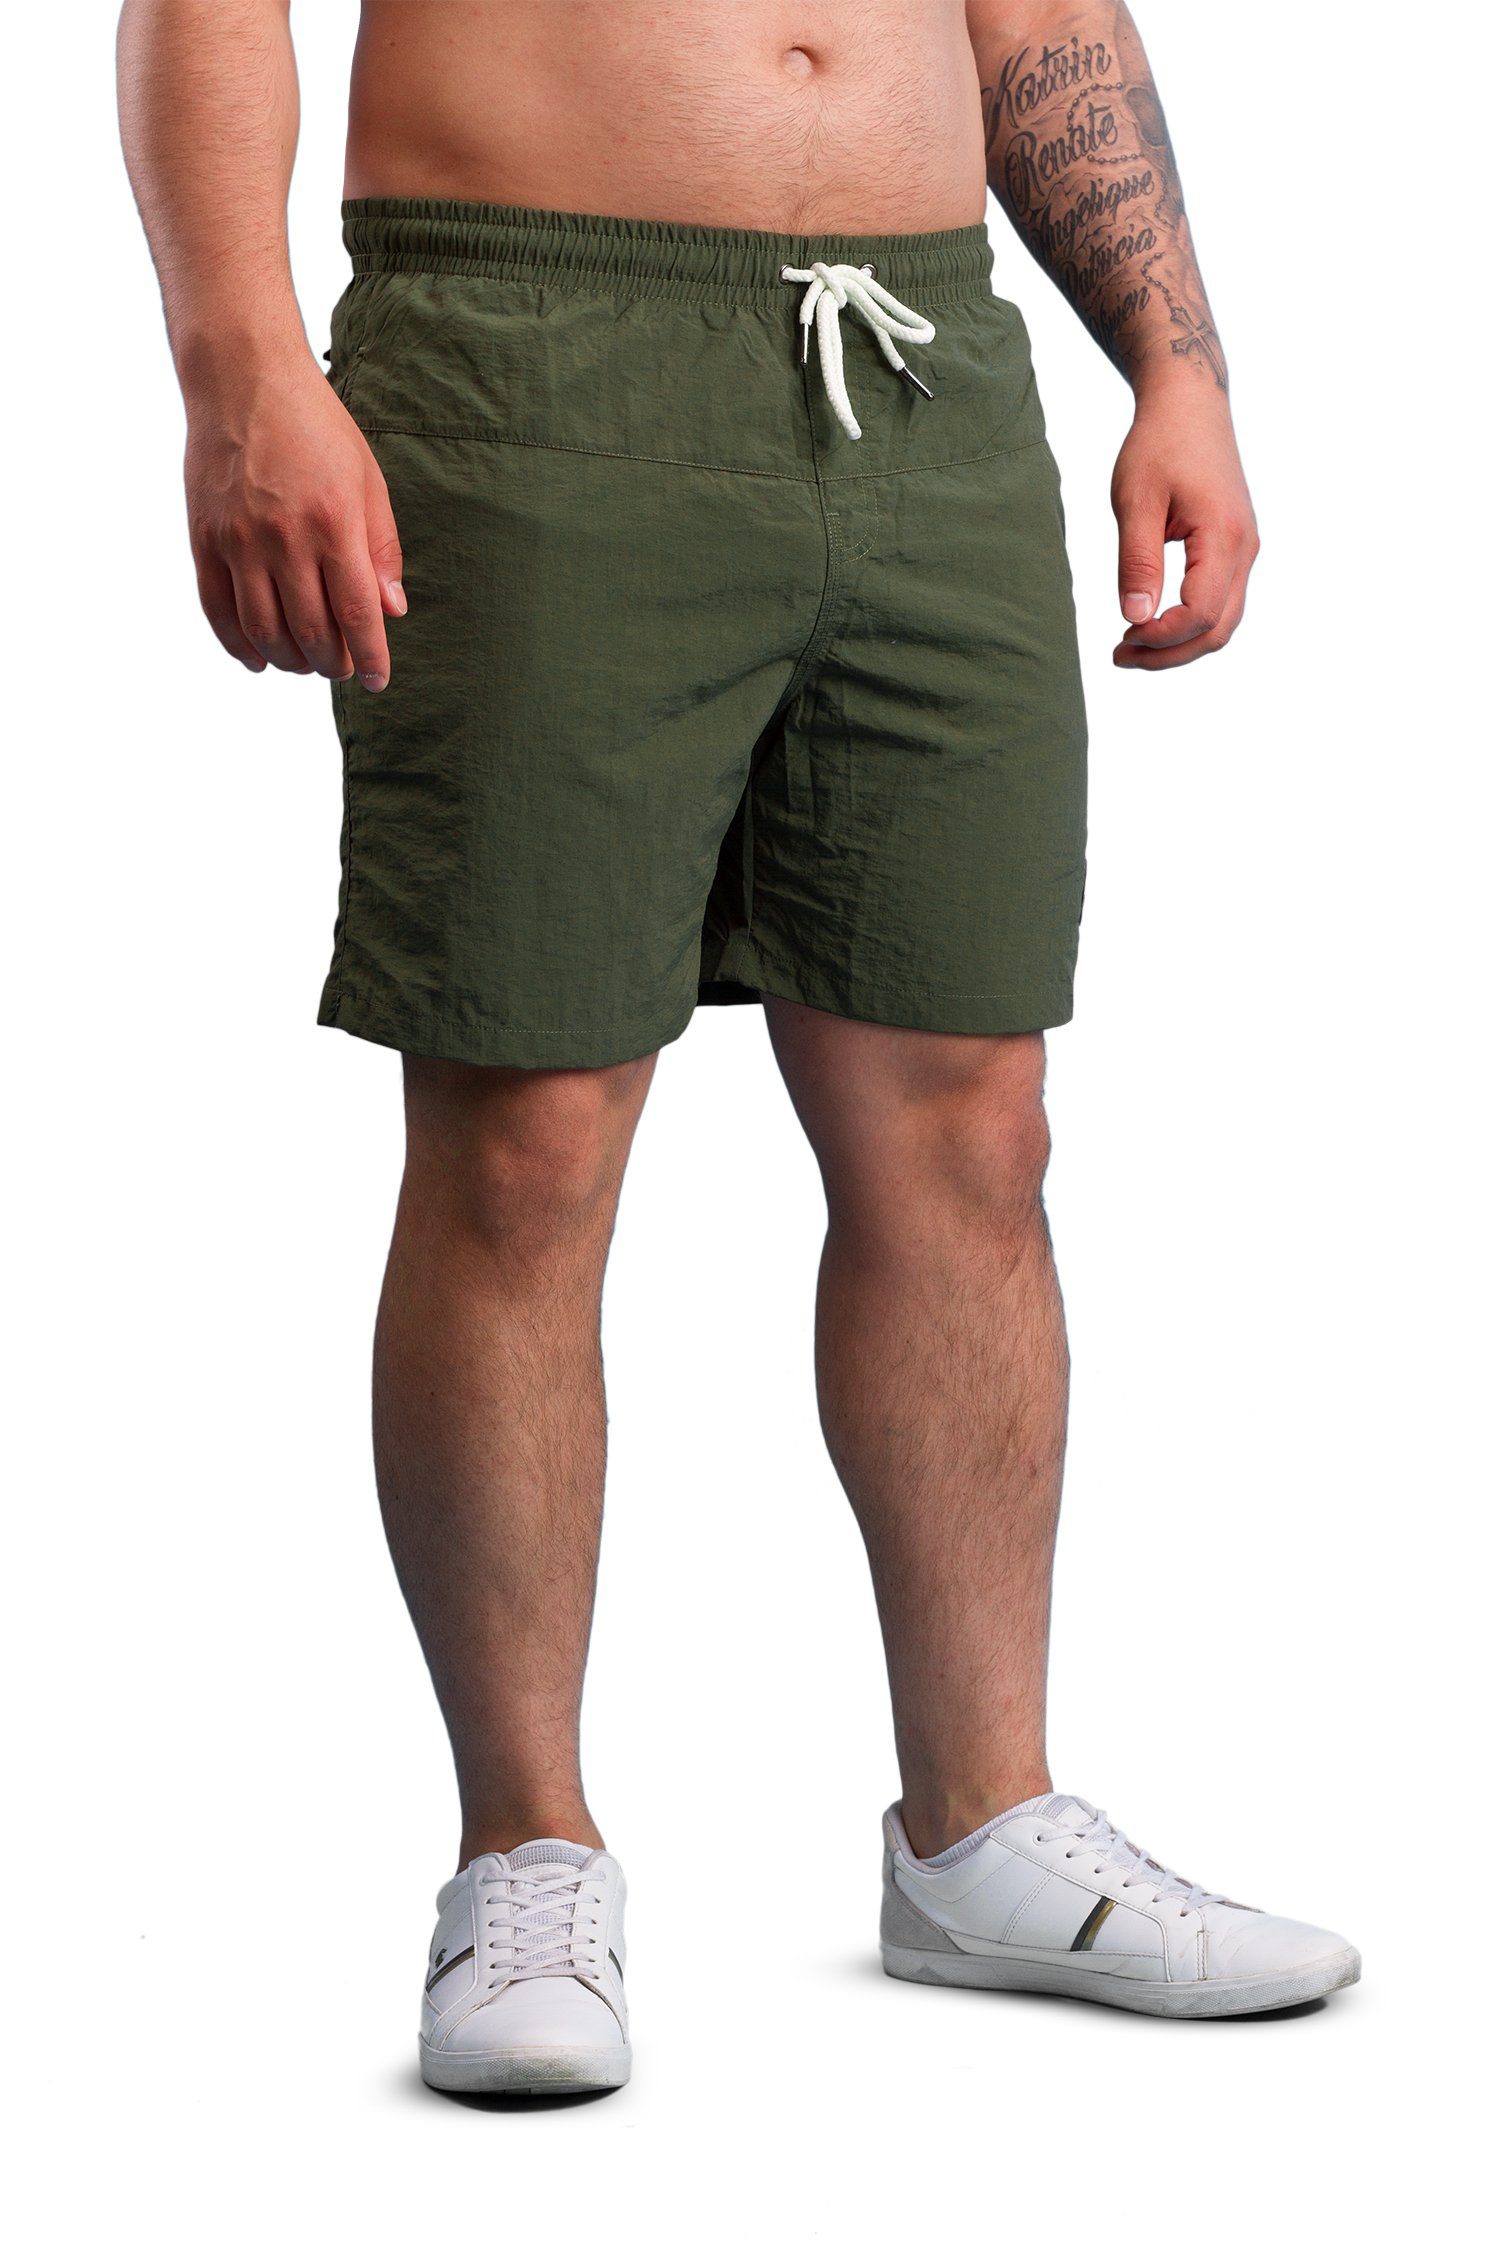 Badehosen Badeshorts schnelltrocknend Shorts - Swim Manufaktur13 Olive/Khaki